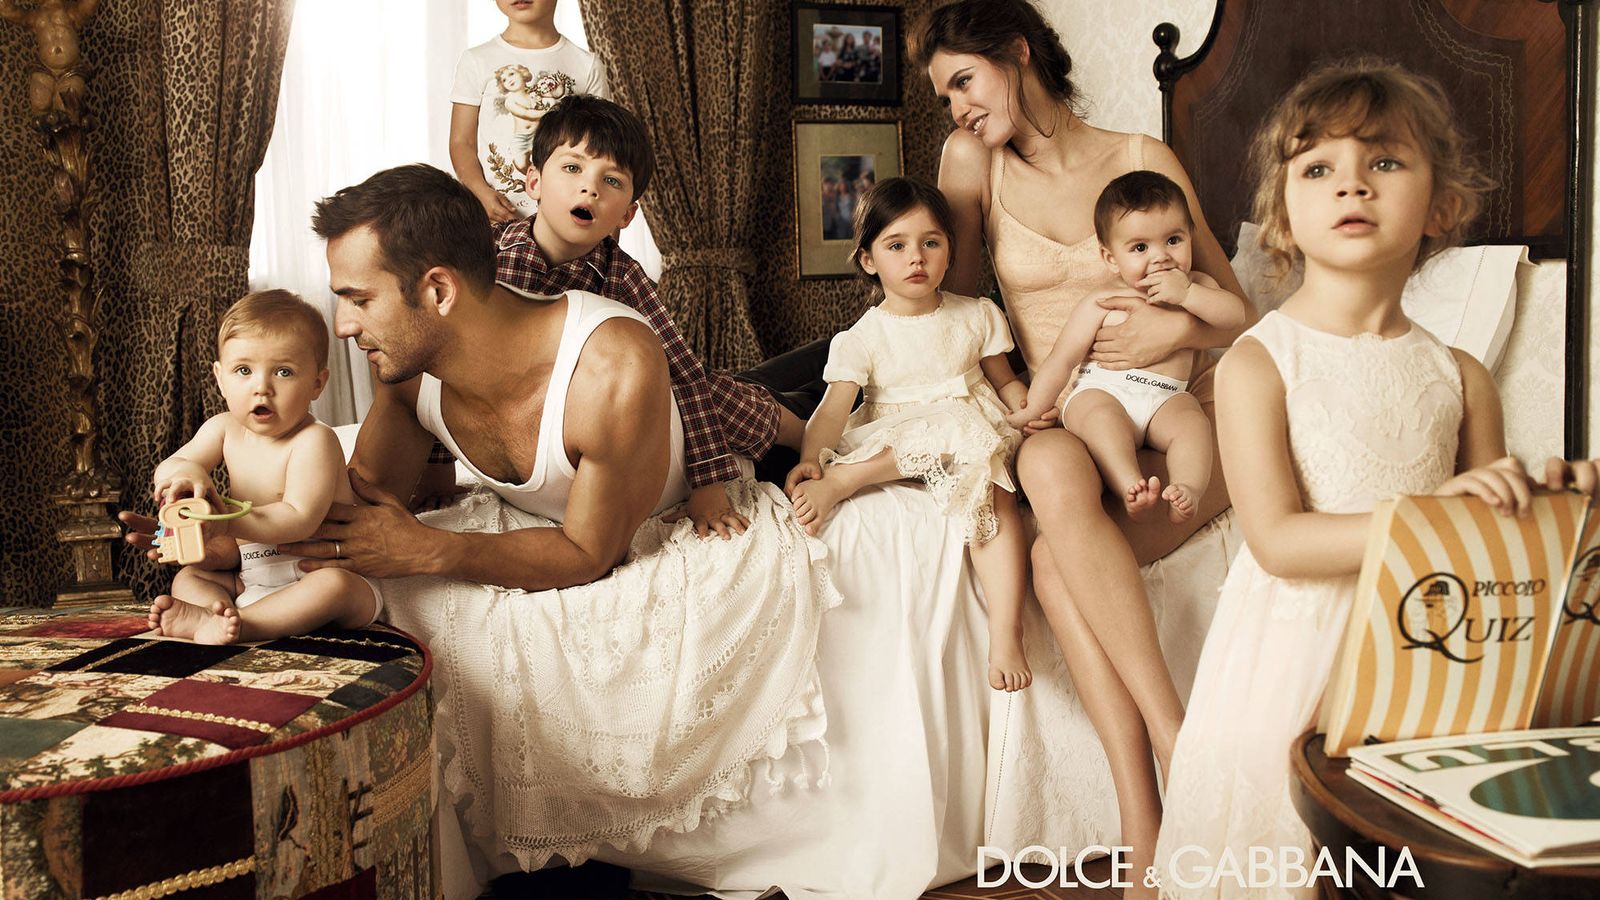 Foto: Dolce & Gabbana.